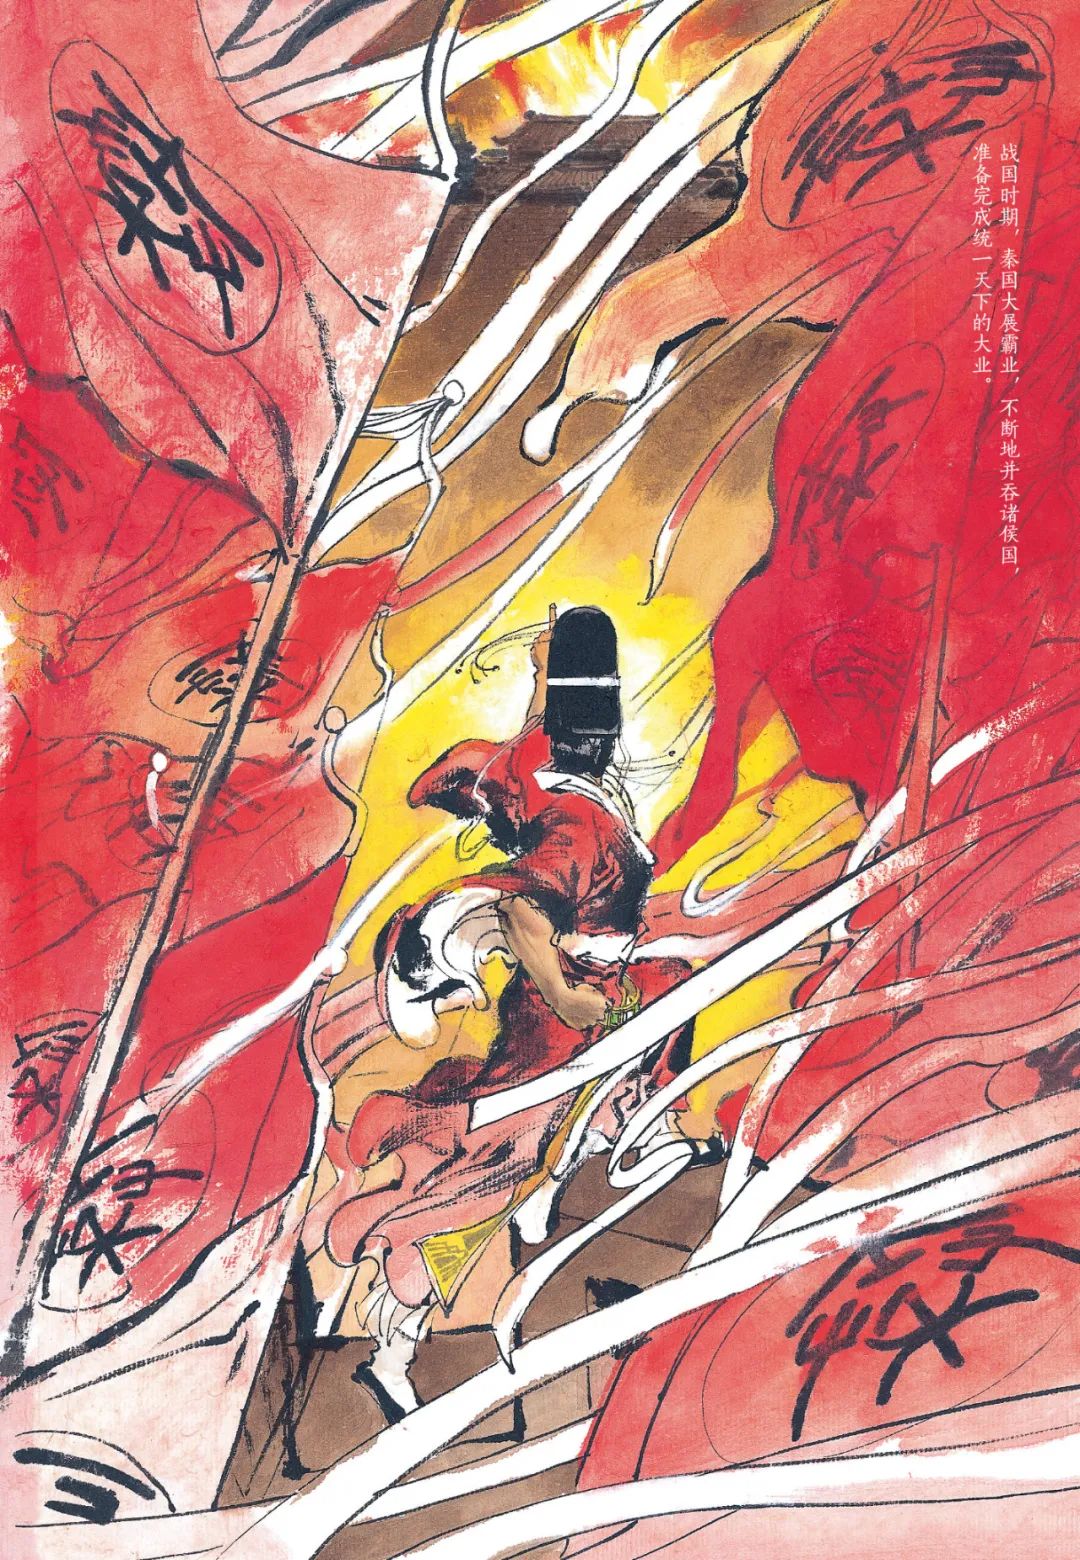 500幅彩绘 跨越00年的山河岁月 首位震撼日本的国漫大师 成名作简体中文版正式引进 鸟人与鱼 微信公众号文章阅读 Wemp